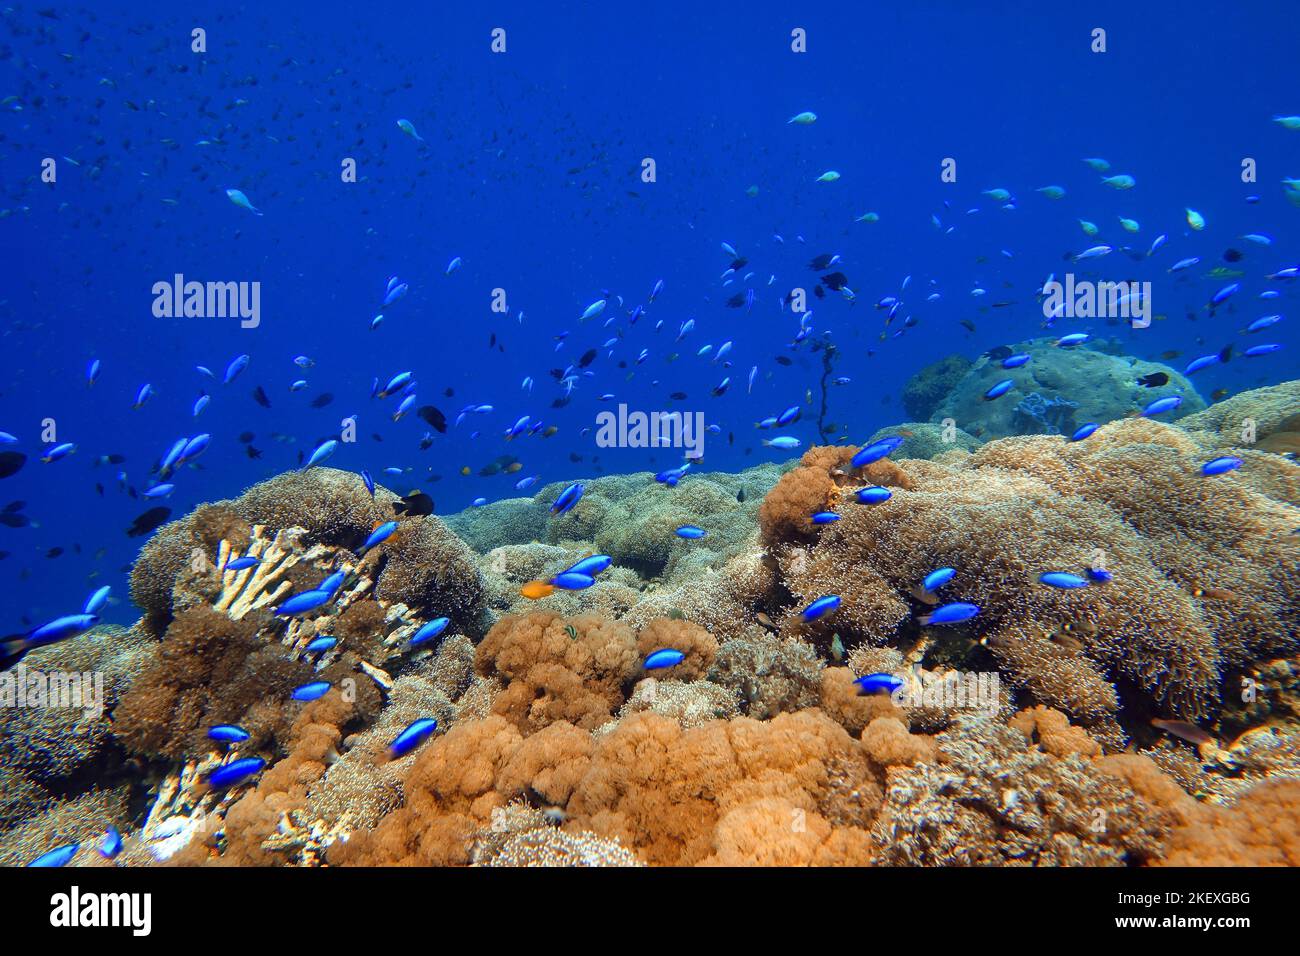 Indonesia Alor Island - Vida marina arrecife de coral con peces tropicales Foto de stock